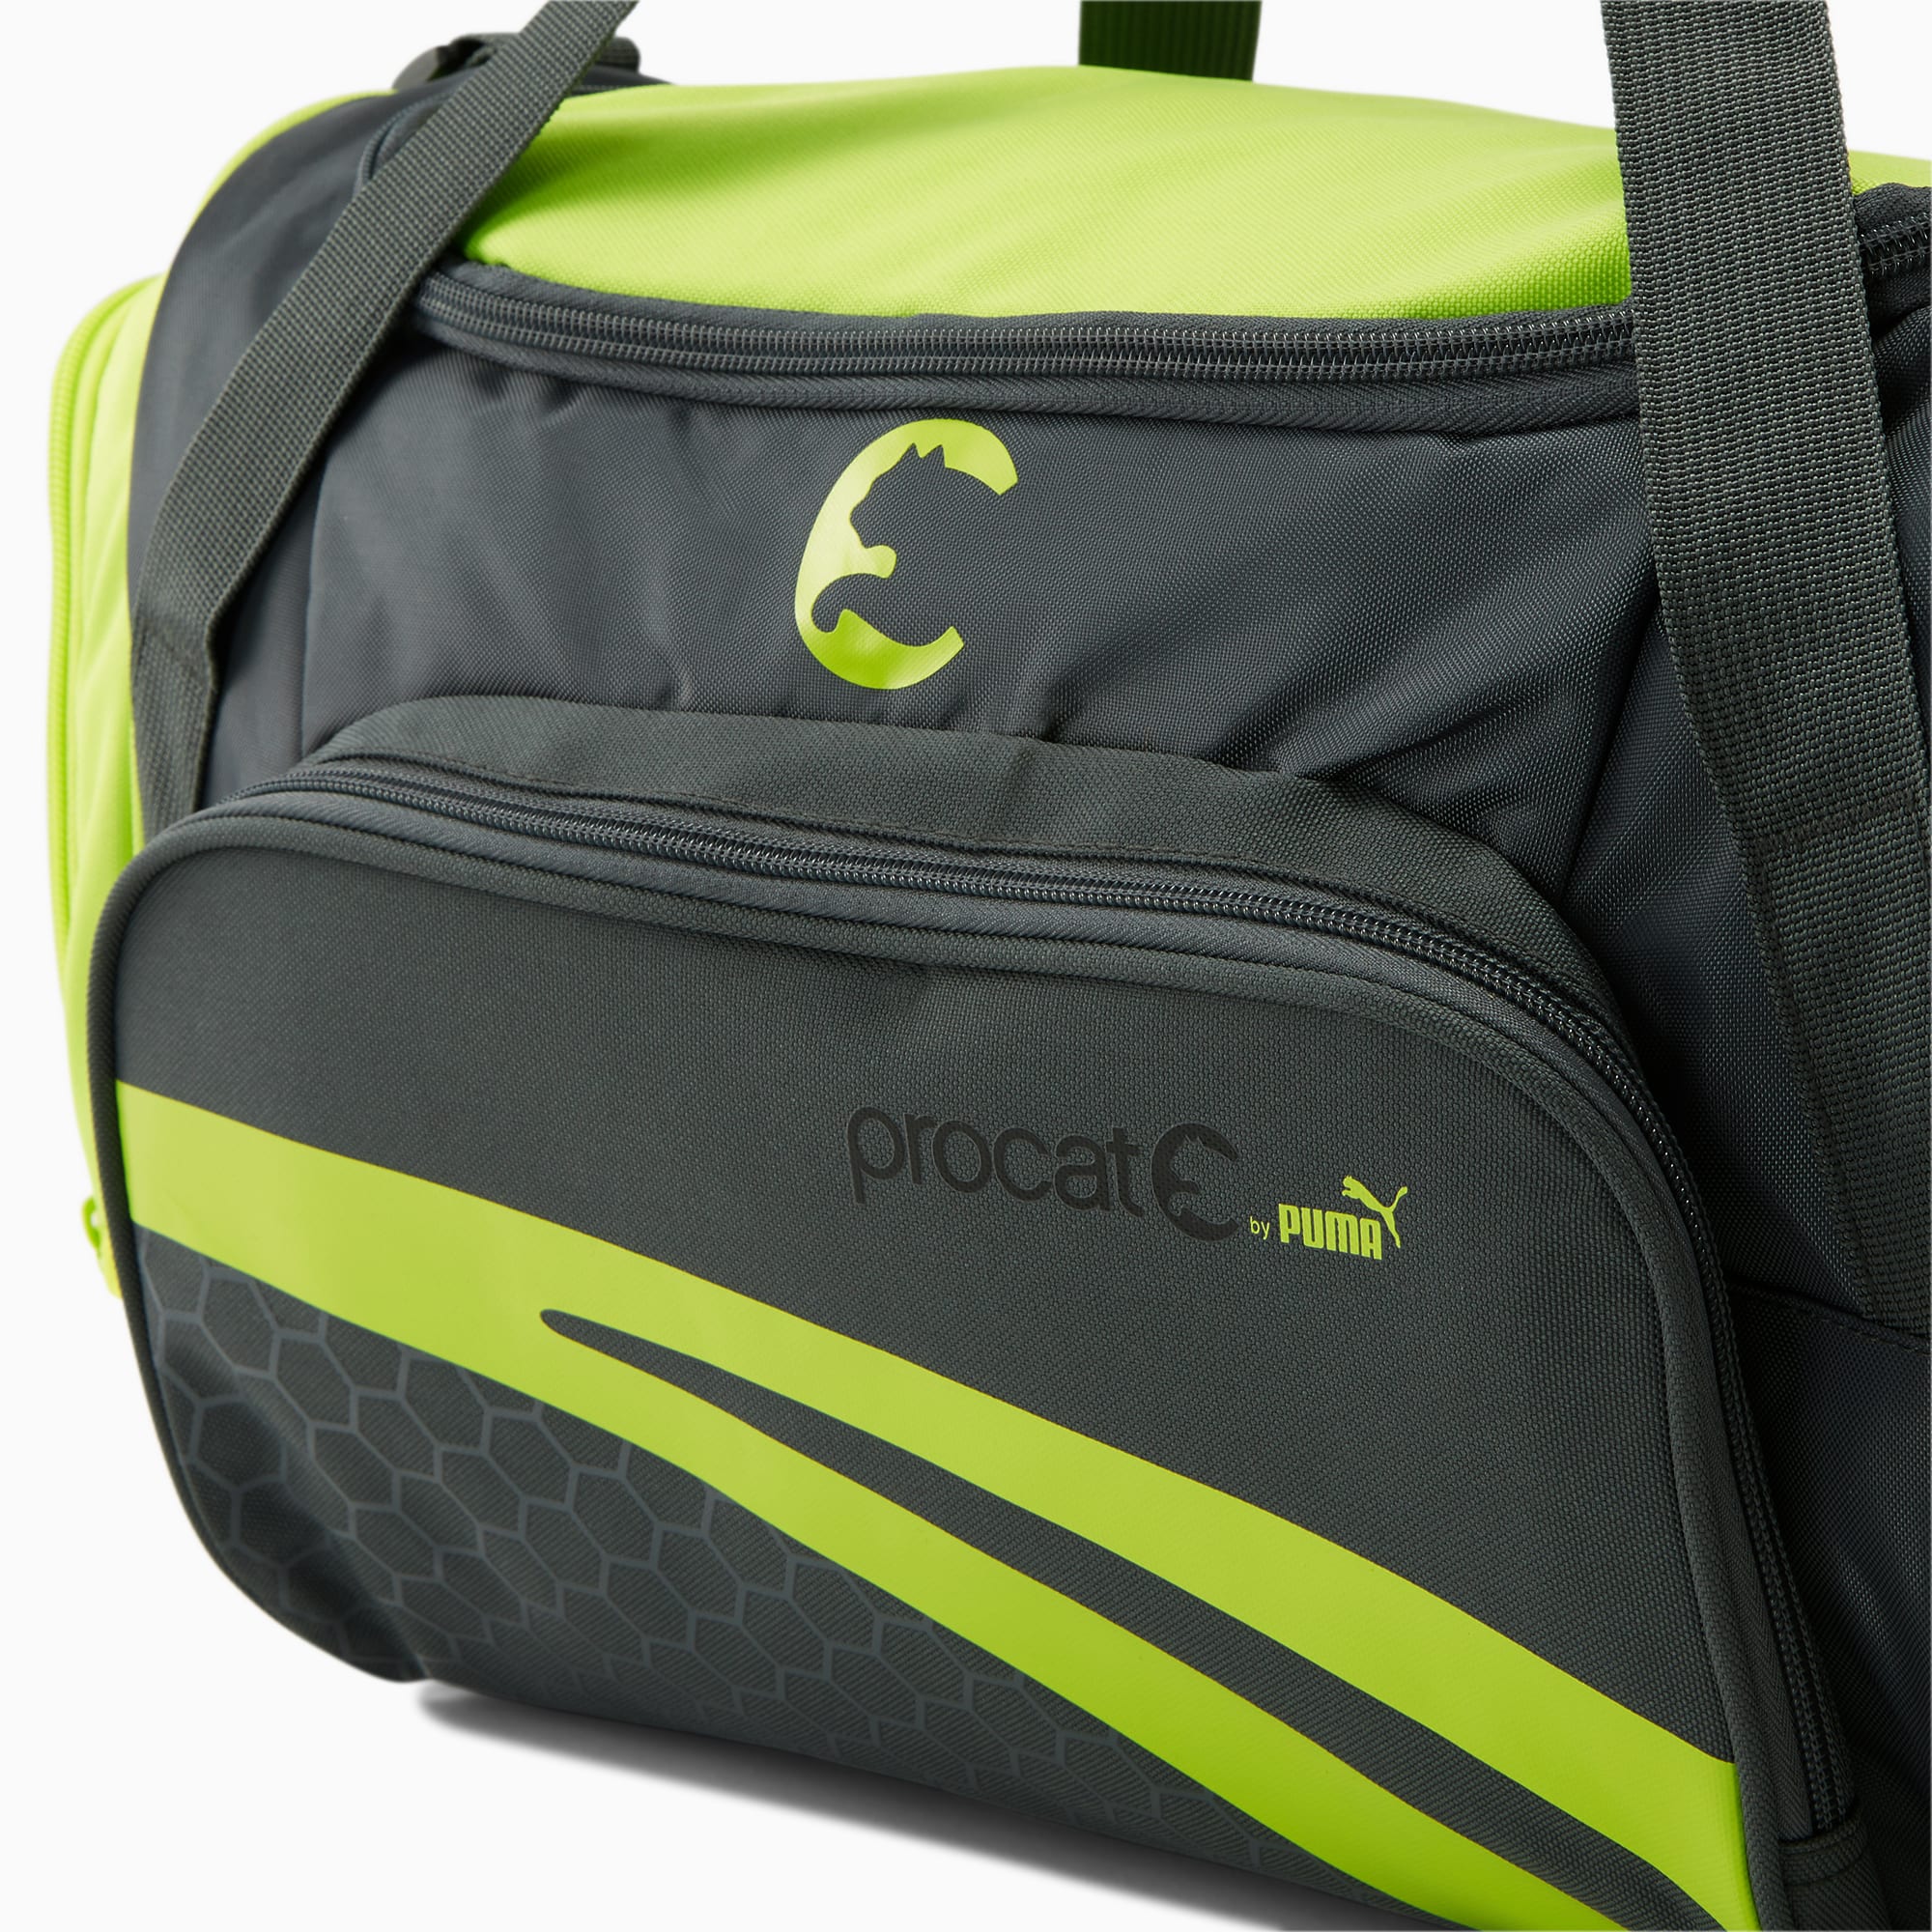 ProCat Duffel Bag | PUMA US